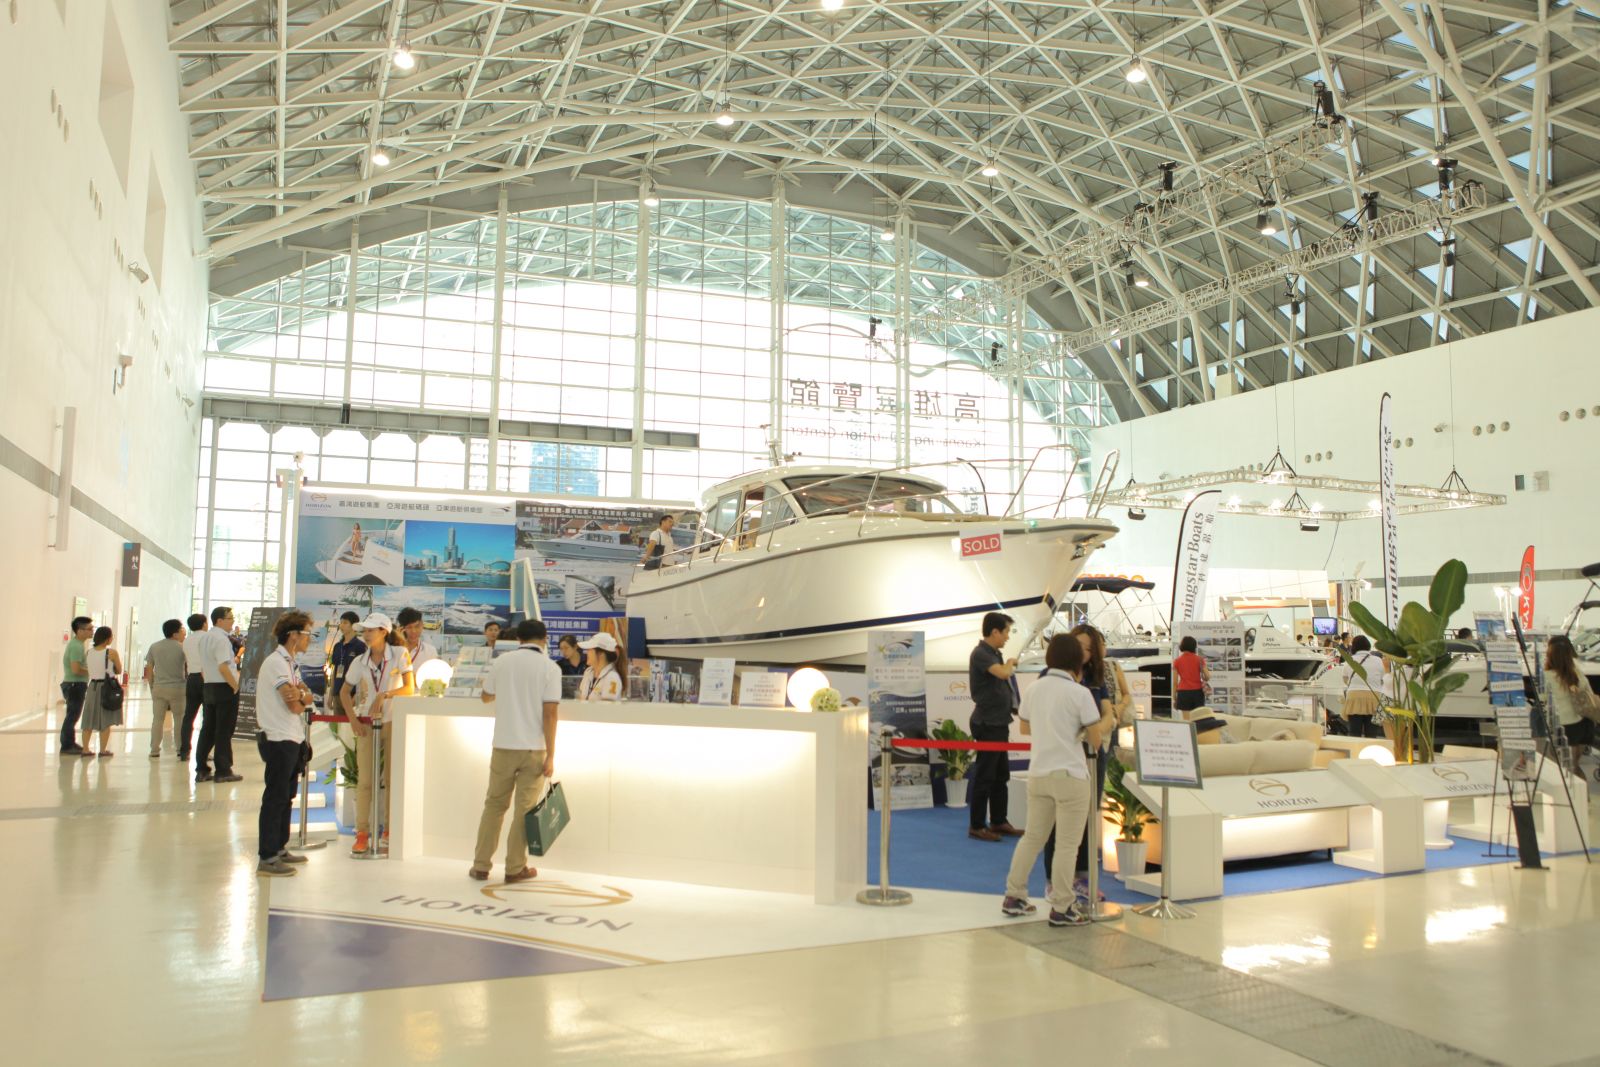 現場展出許多遊艇、飛機、名車等罕見的高價位商品。